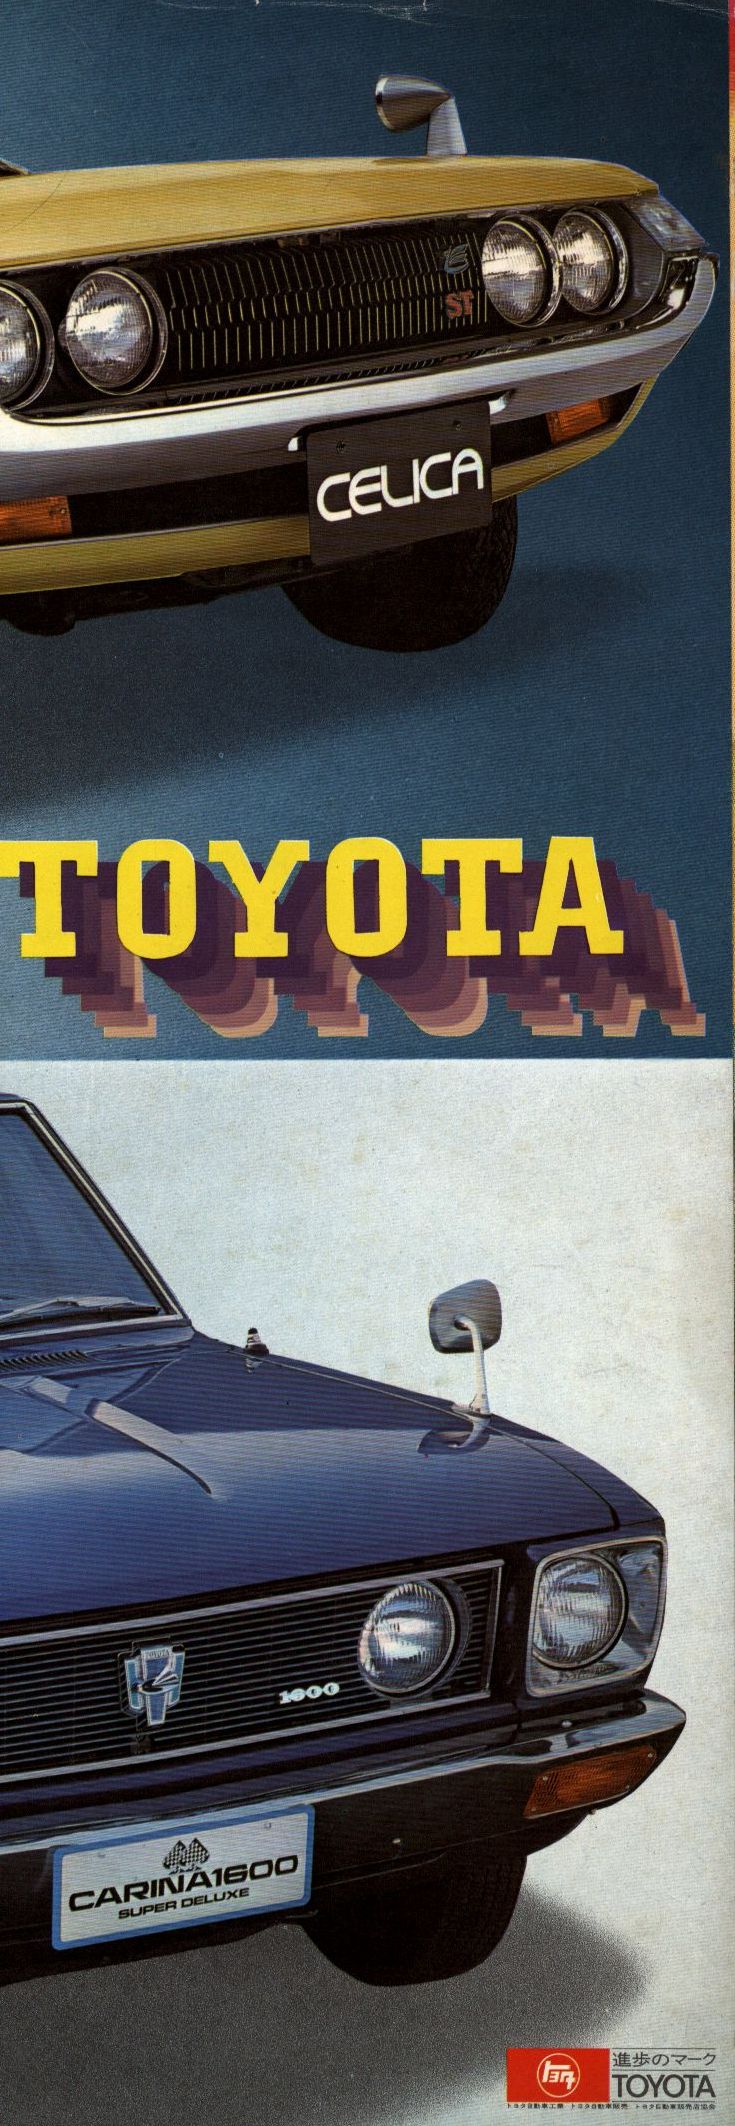 トヨタ自動車工業 車カタログ TOYOTA 総合パンフレット | ありある